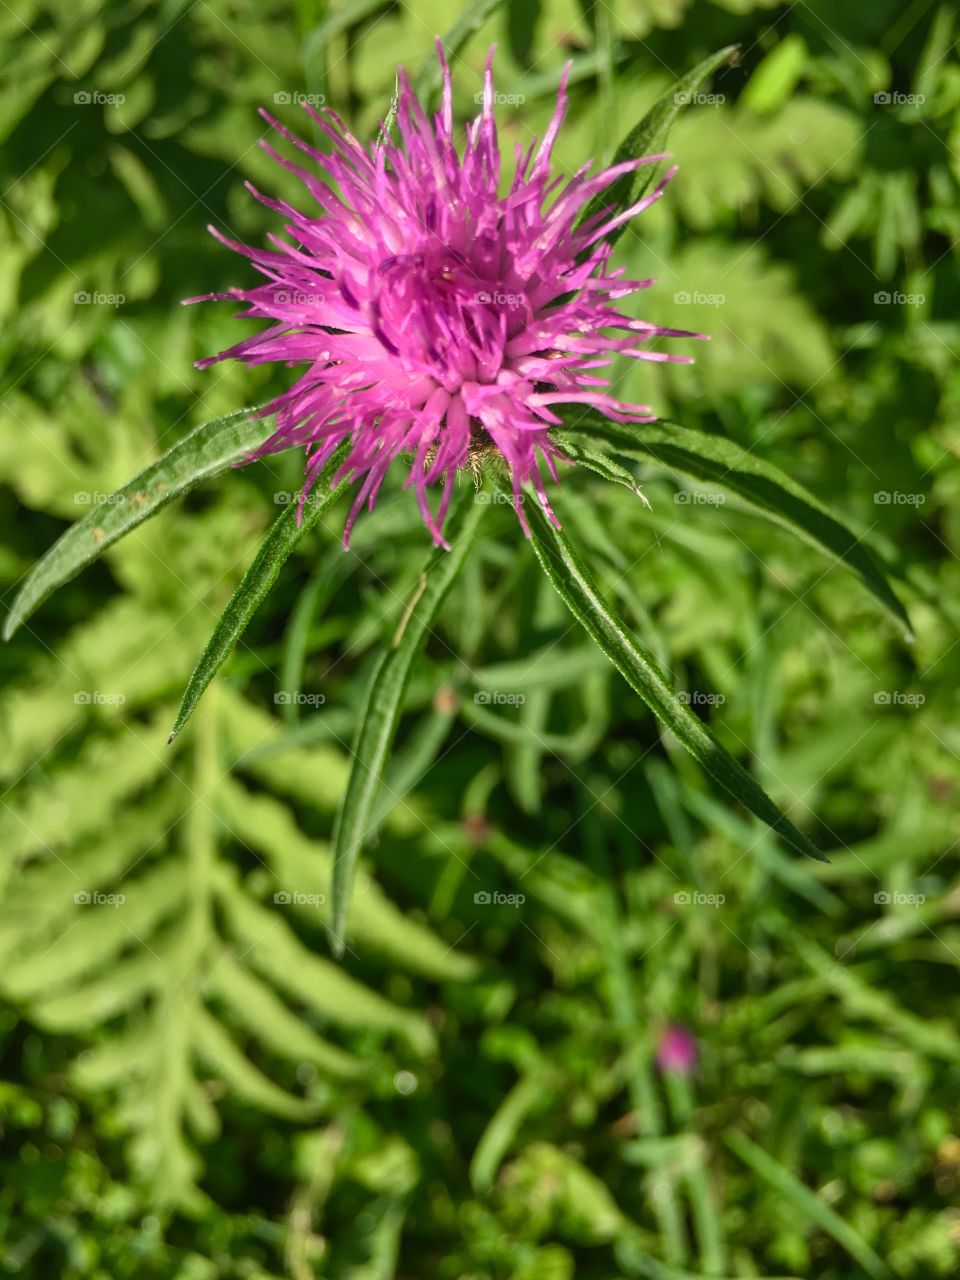 August wildflower 